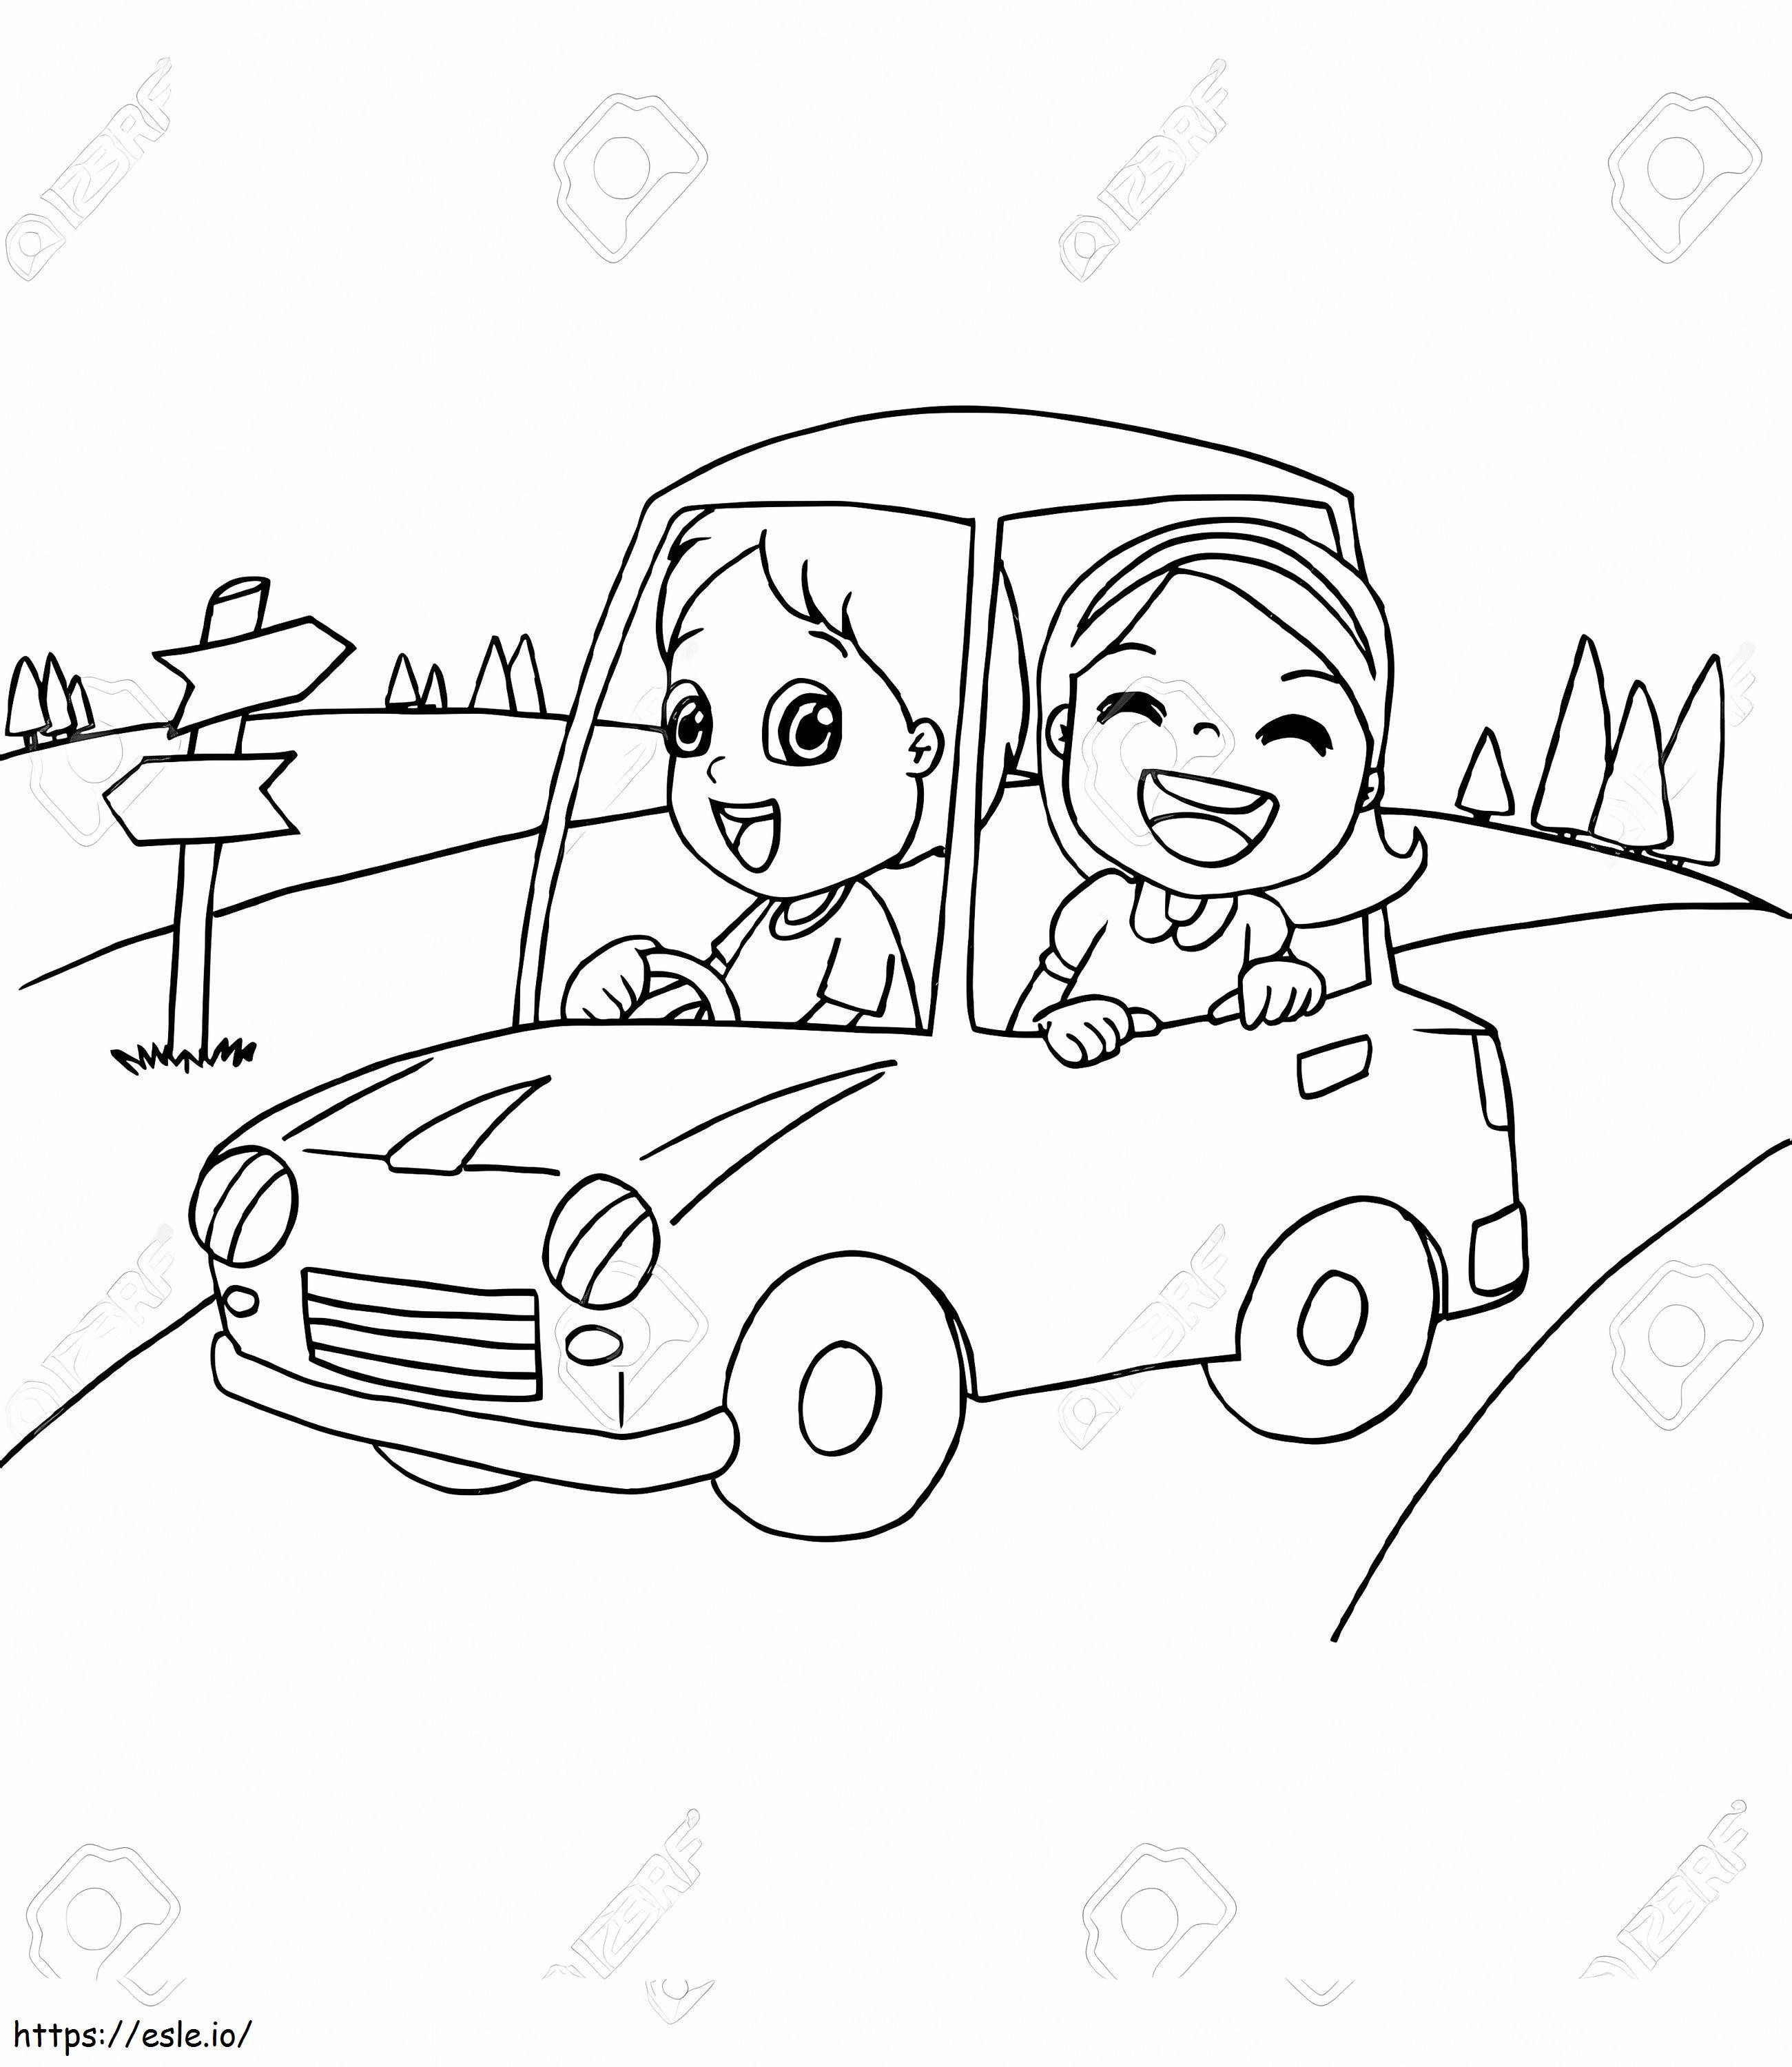 Coloriage 83072559 Image d'un petit garçon et d'un ami conduisant une voiture jouet à imprimer dessin